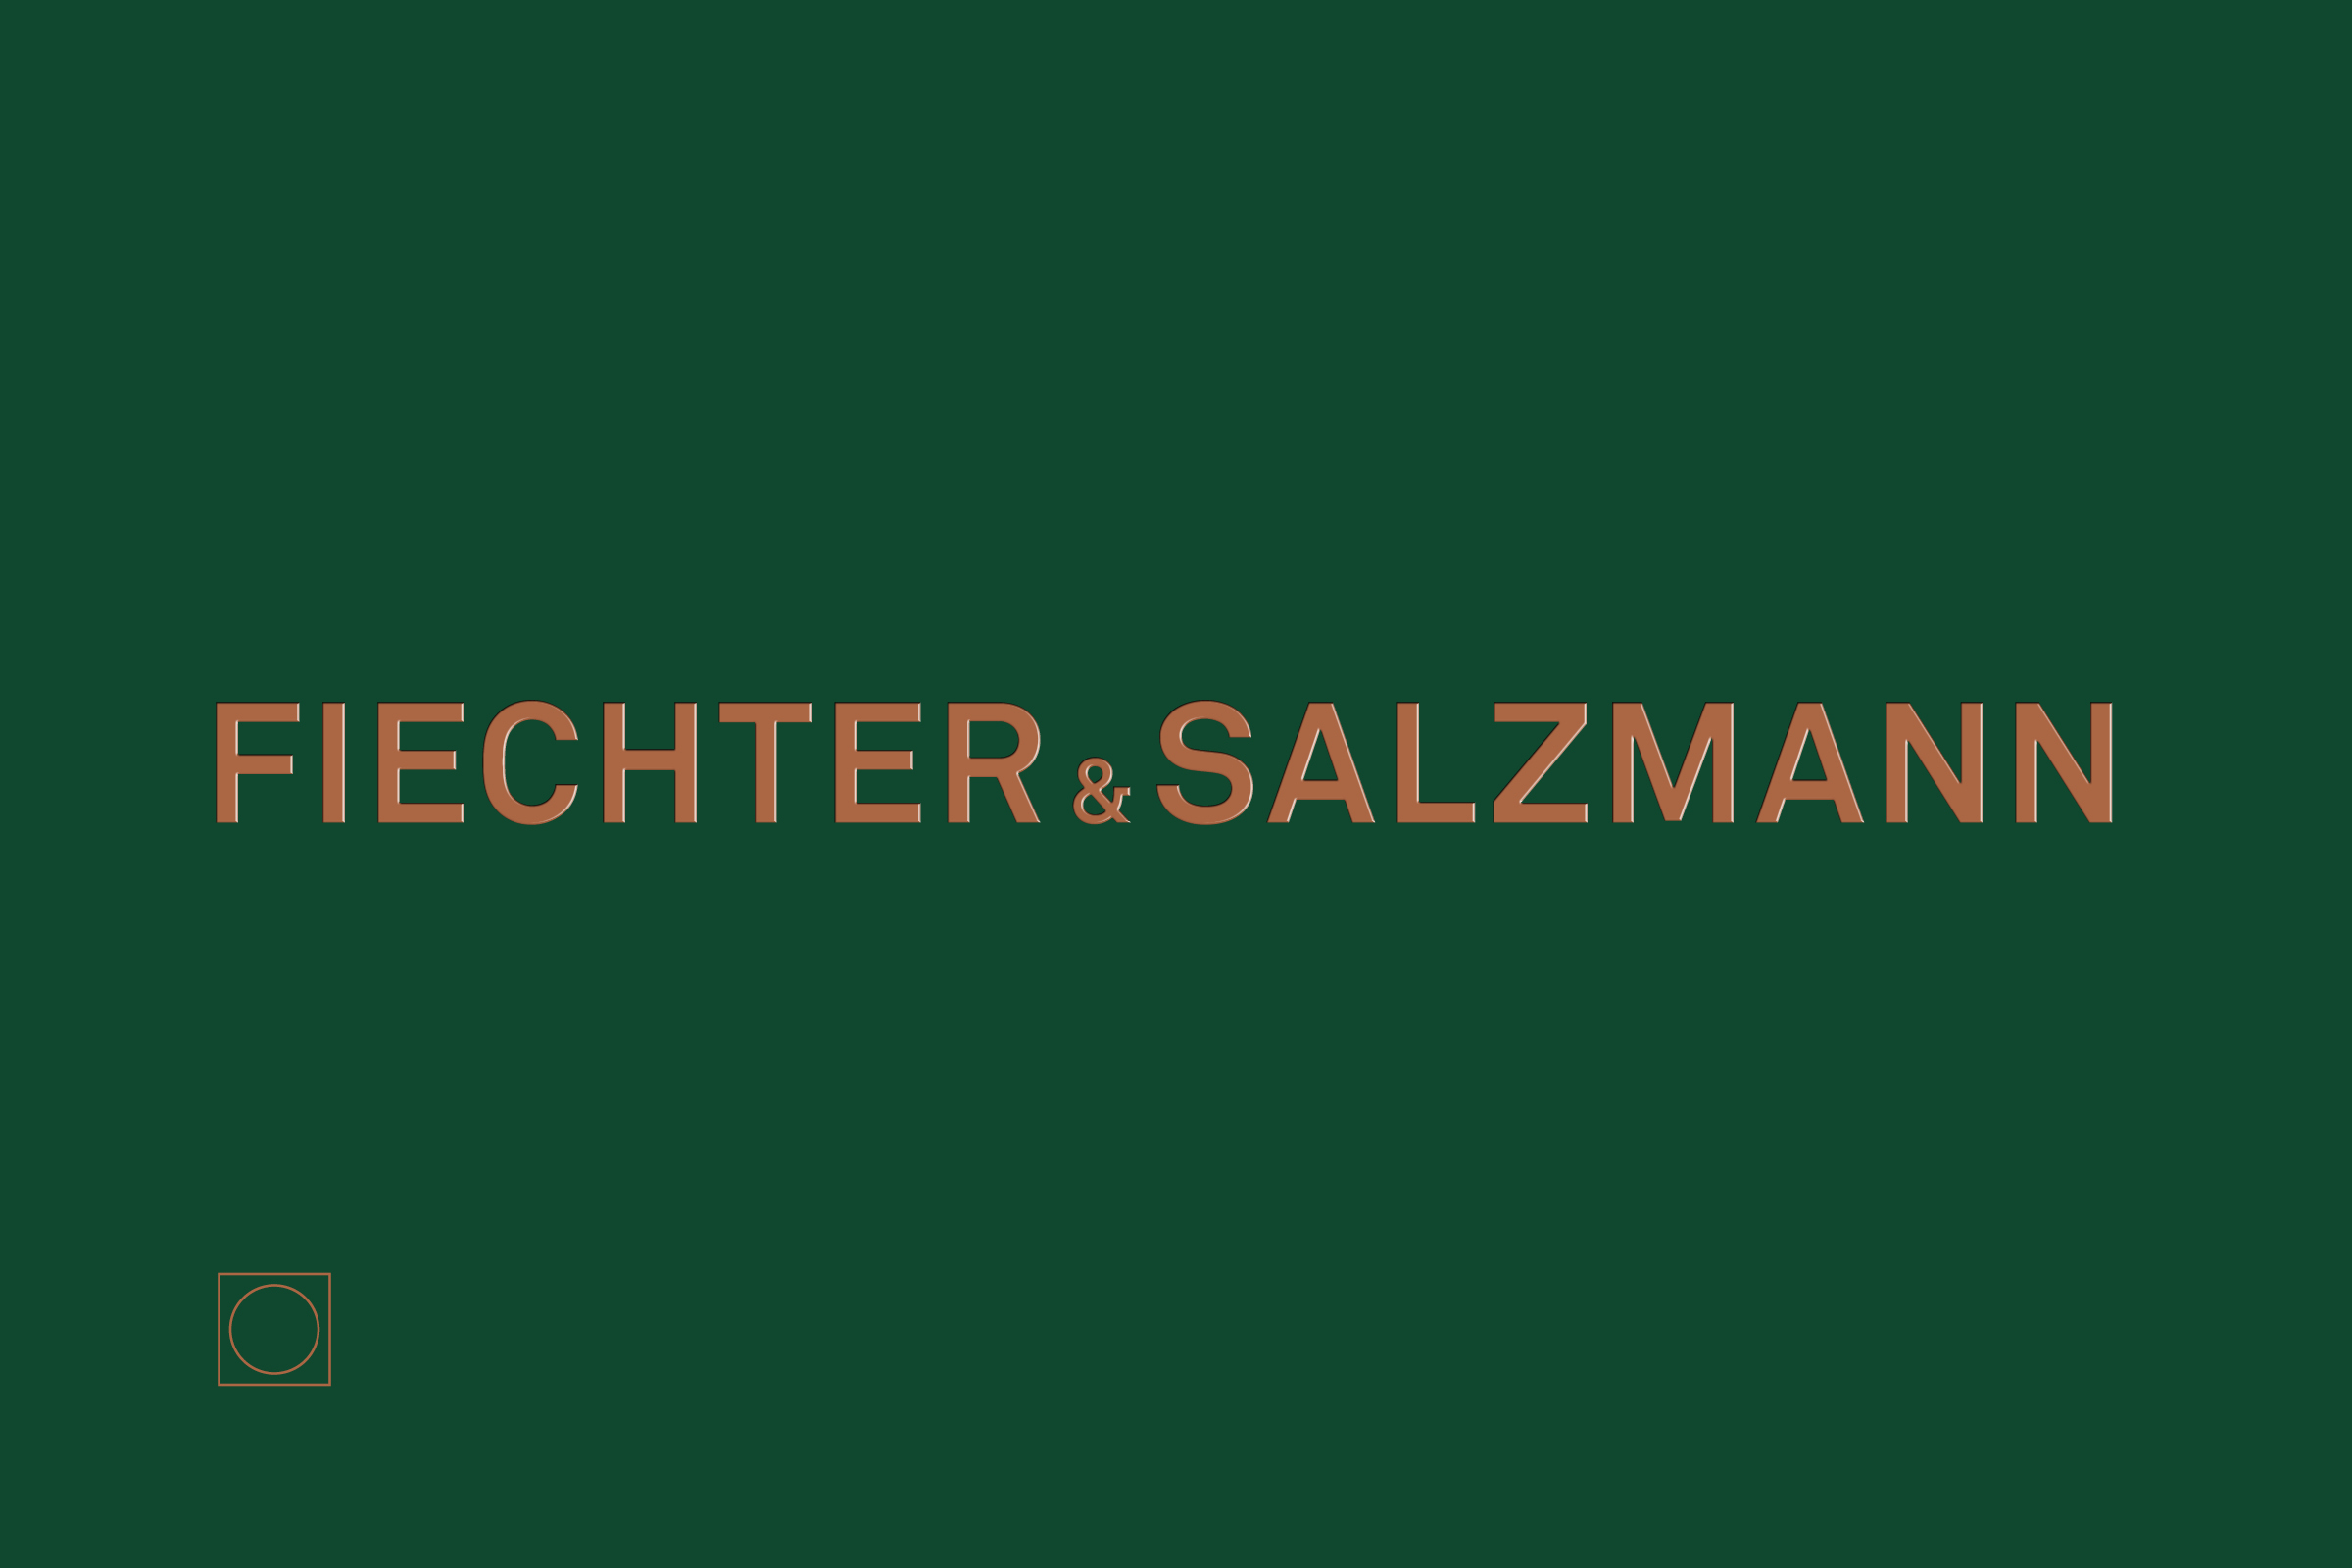 Fiechter_Salzmann_1